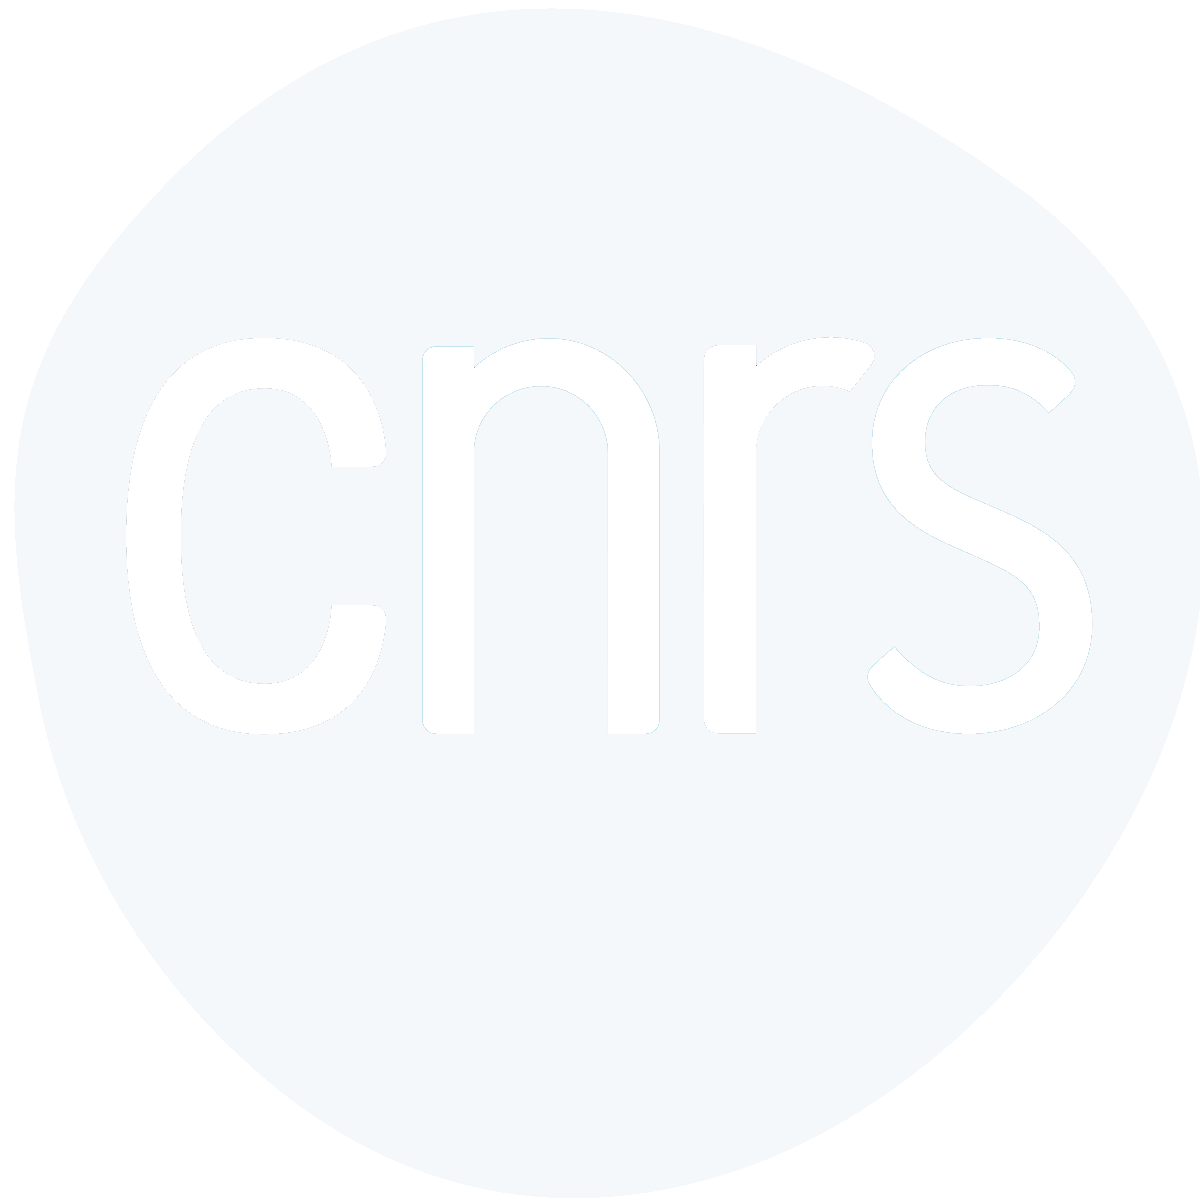 CNRS_MANUTECHUSD_LASER